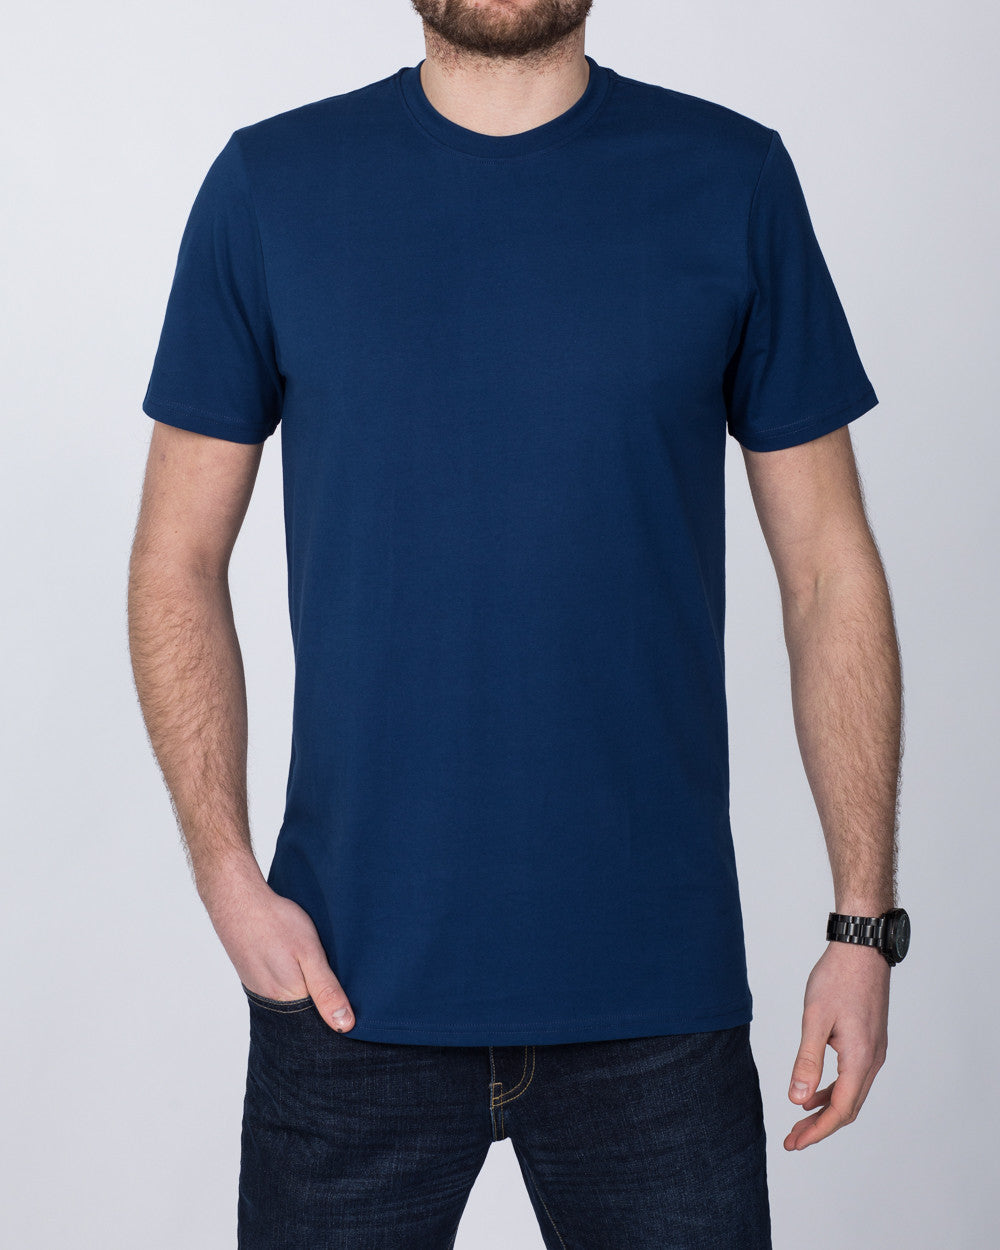 Girav Sydney Tall T-Shirt (estate blue)